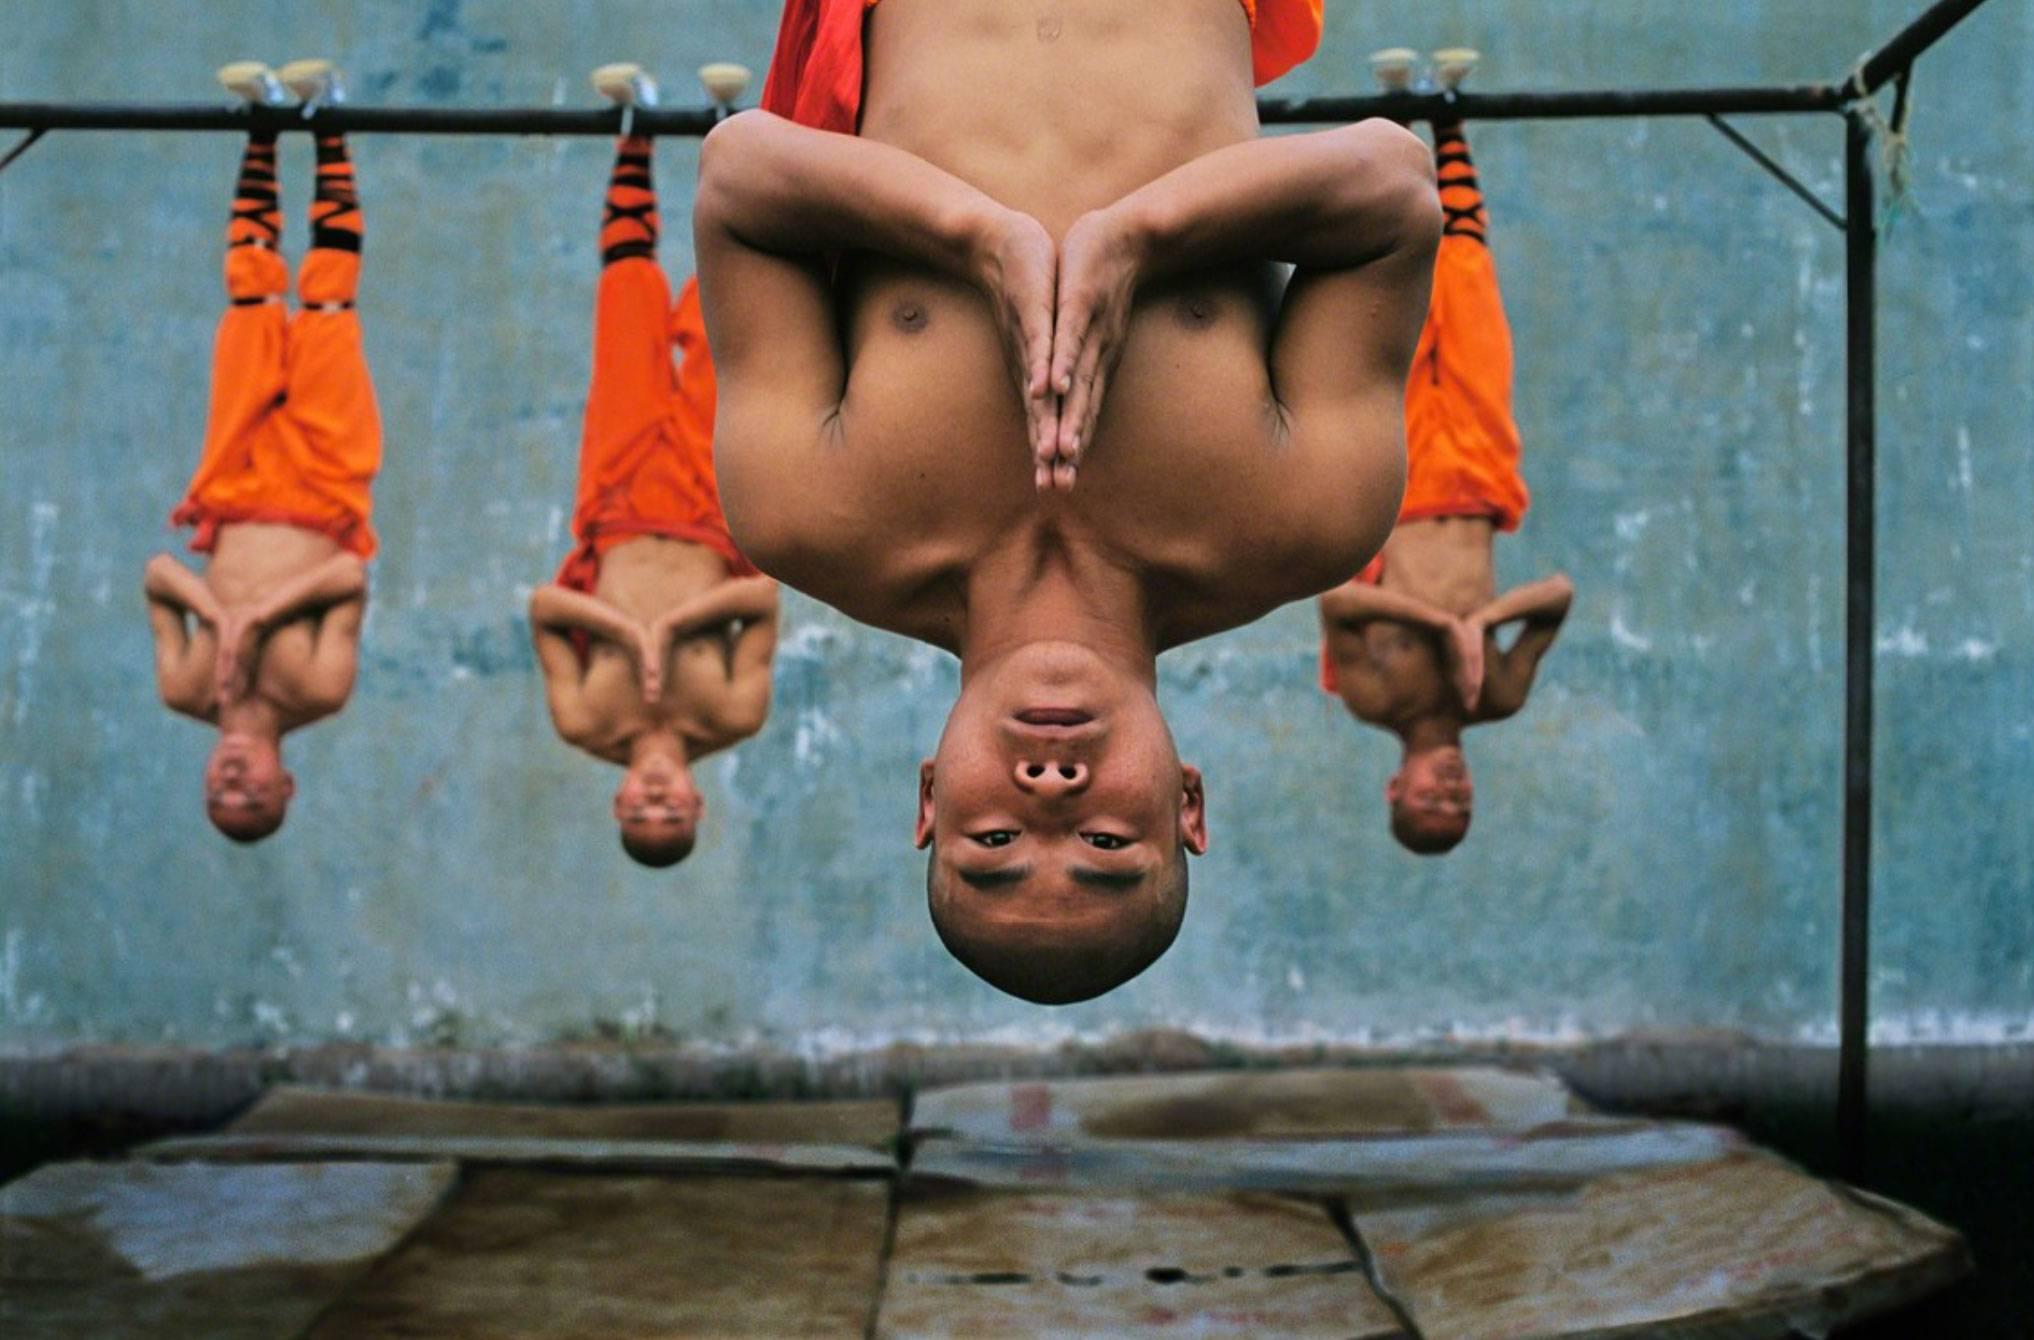 Shaolin Monks Training. Zhengzhou. China